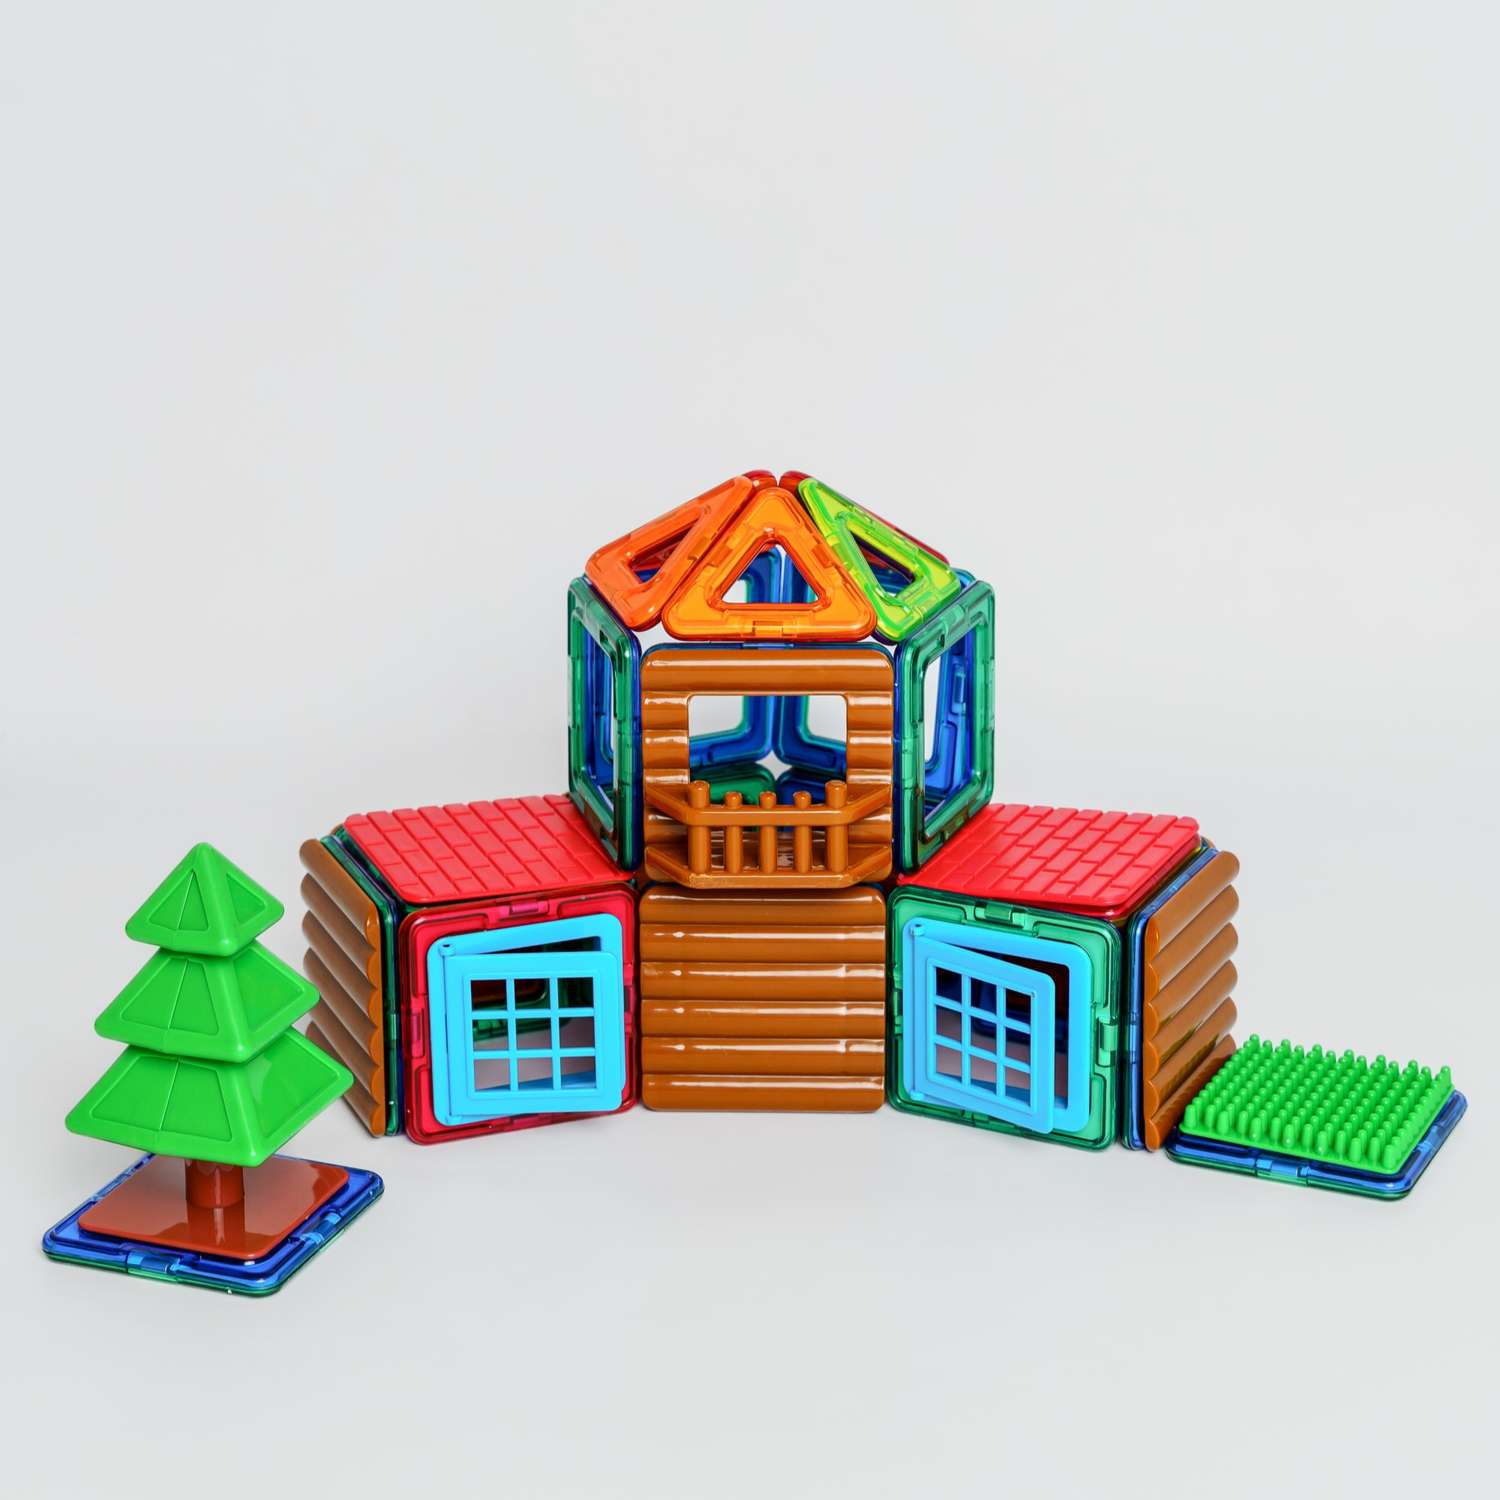 Конструктор Крибли Бу магнитный пластиковый сборный/детская развивающая игрушка с крупными деталями 48 элементов - фото 4